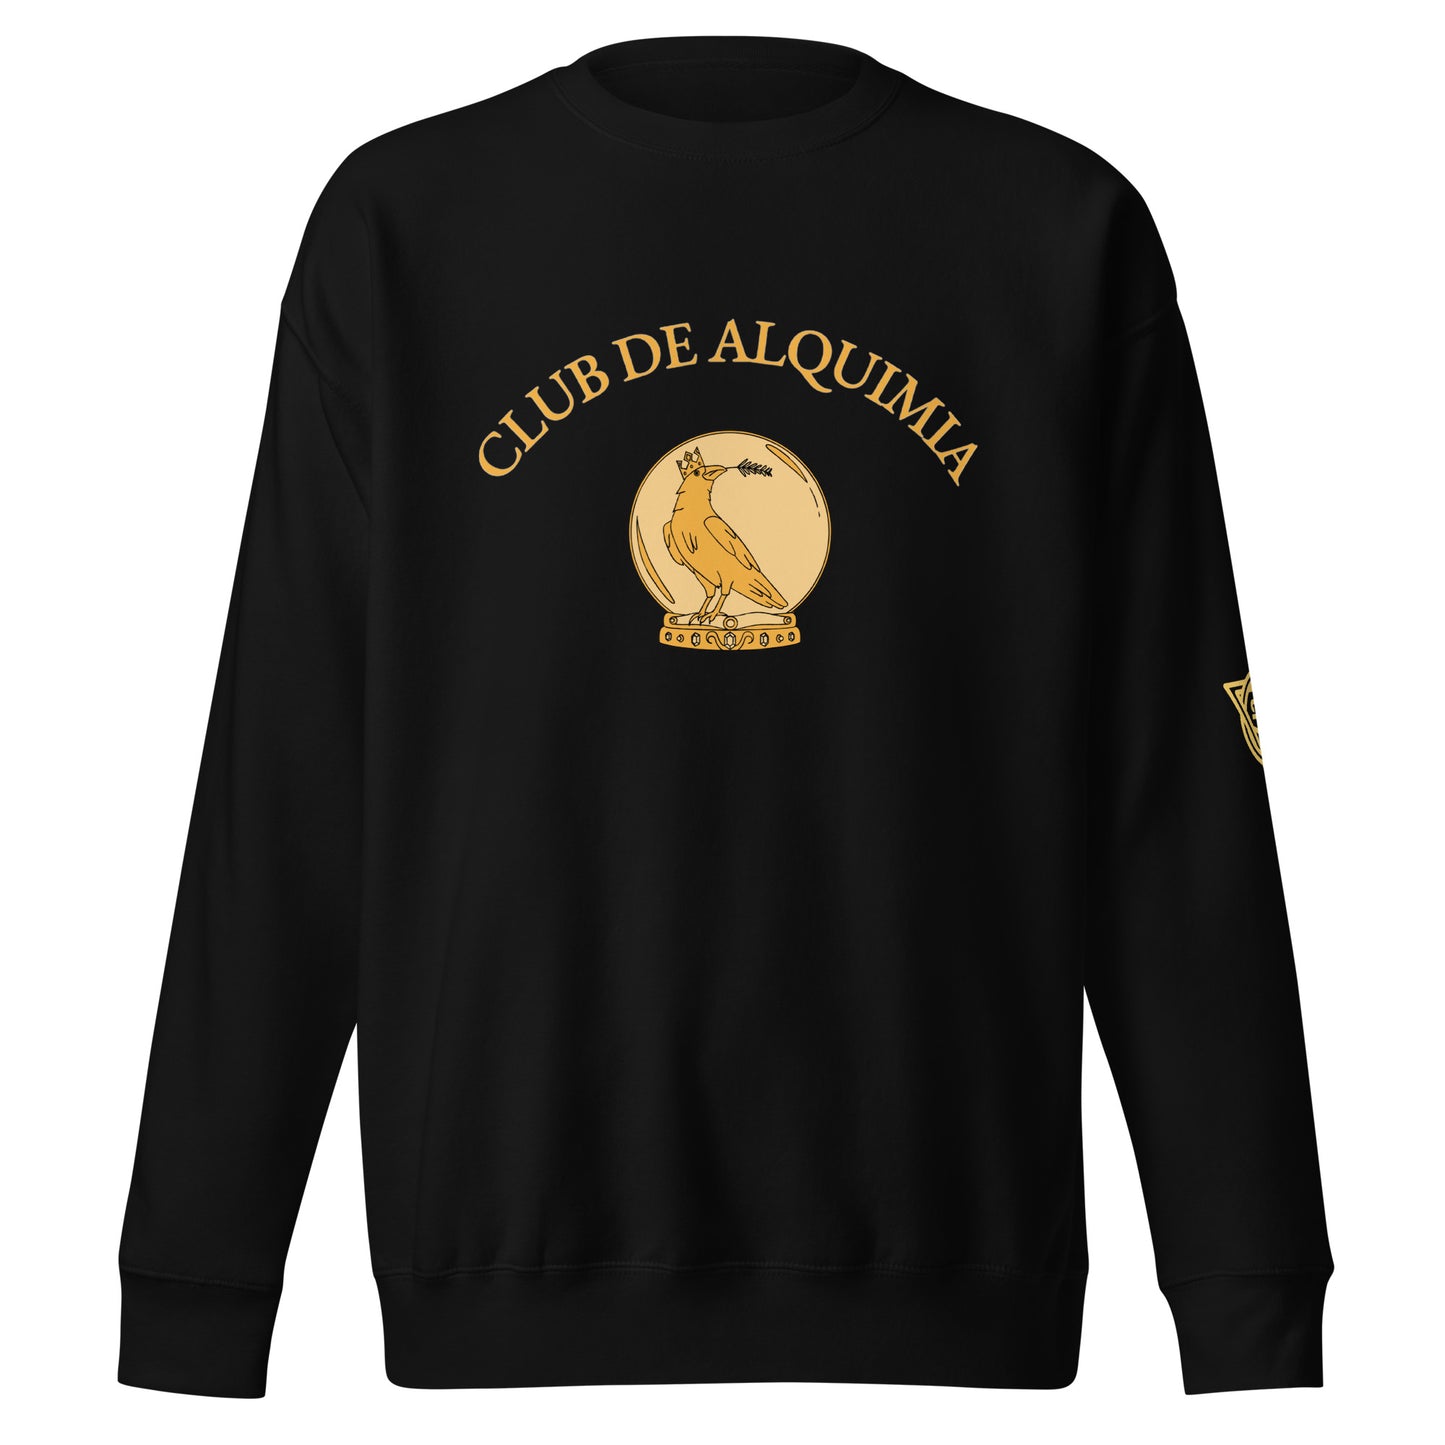 Galeria Atzilut Premium Sweatshirt